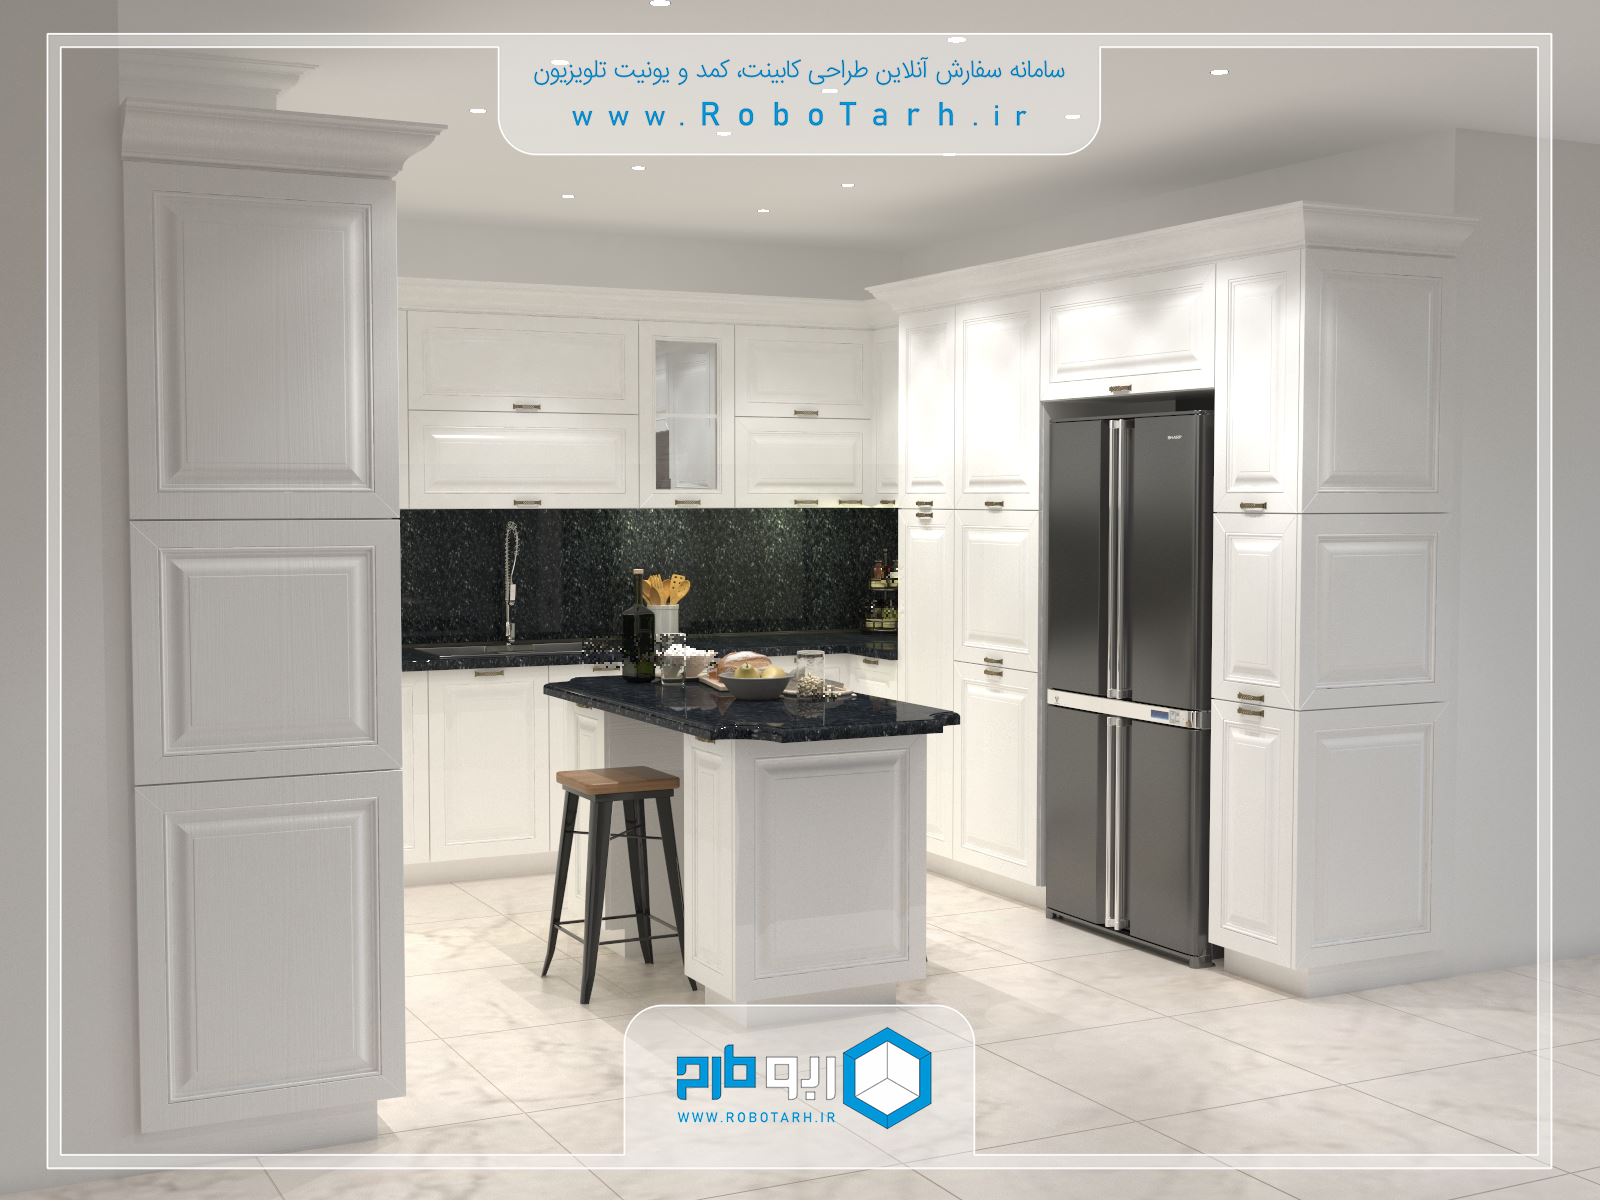 طراحی کابینت آشپزخانه ای به سبک کلاسیک ( ممبران ) با رنگ سفید با چیدمان یو شکل - ربوطرح